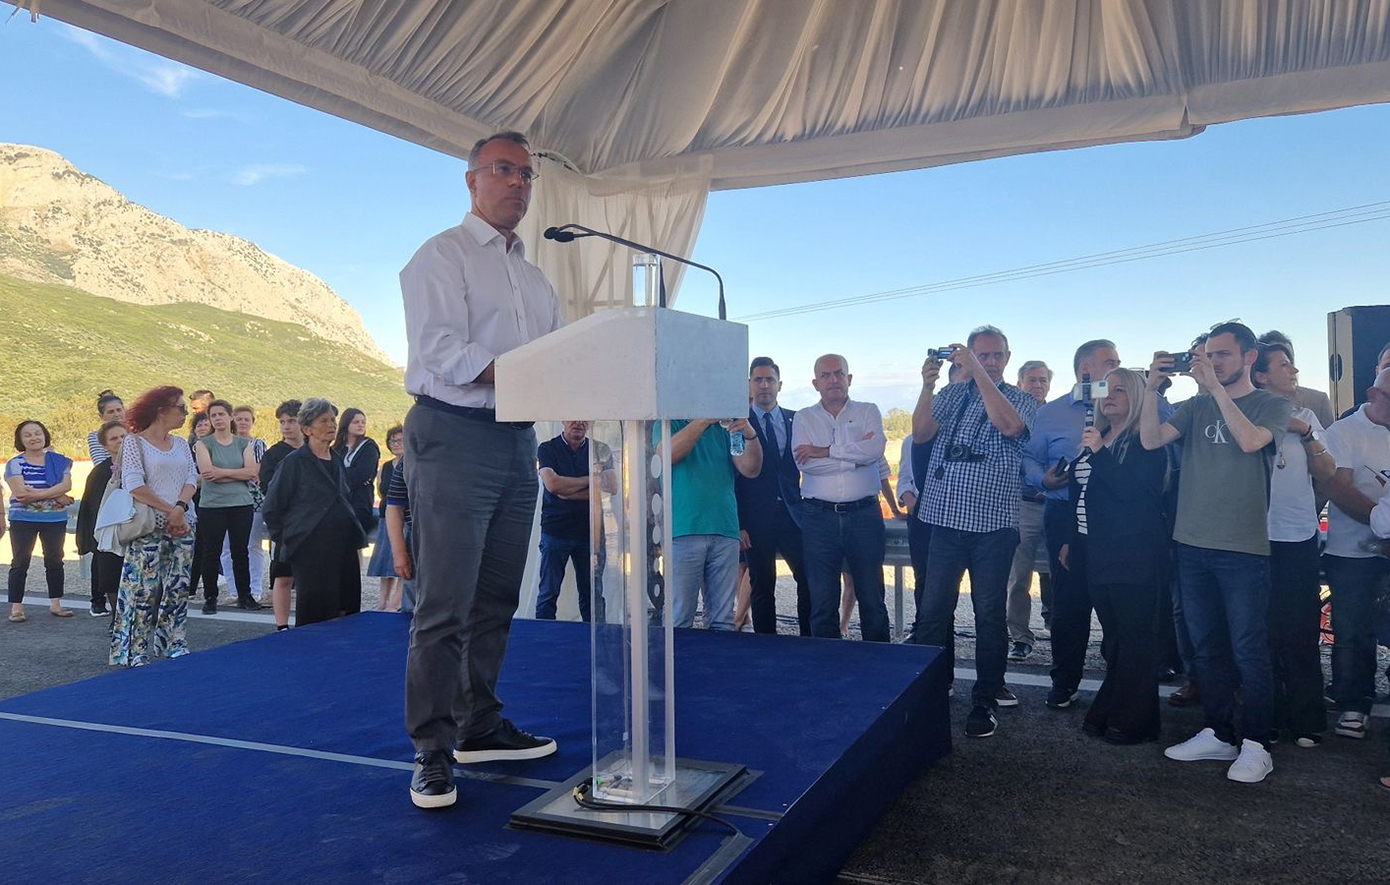 Σταϊκούρας: Η νέα οδική γέφυρα του Ευήνου δίνει οριστική λύση στην επανασύνδεση της παλαιάς εθνικής οδού Αντιρρίου – Ιωαννίνων